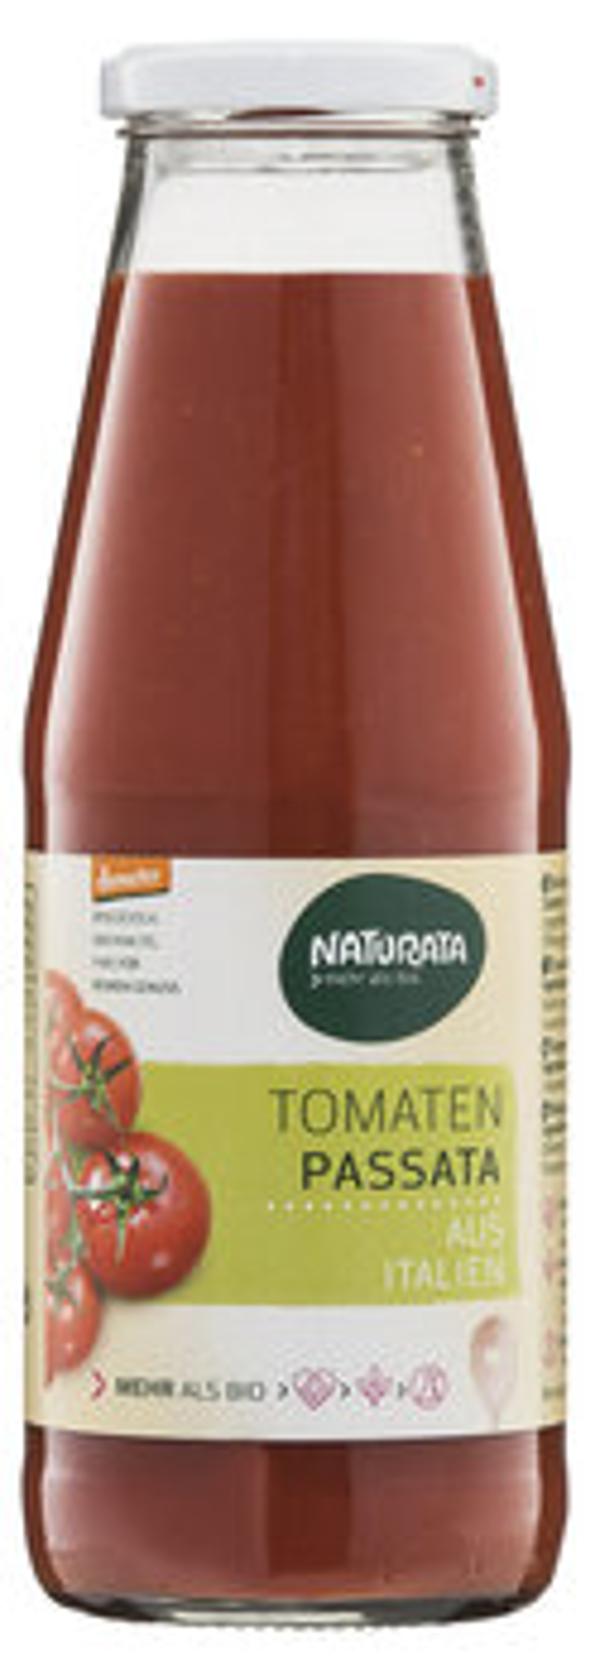 Produktfoto zu Tomaten Passata (12 x 700g)